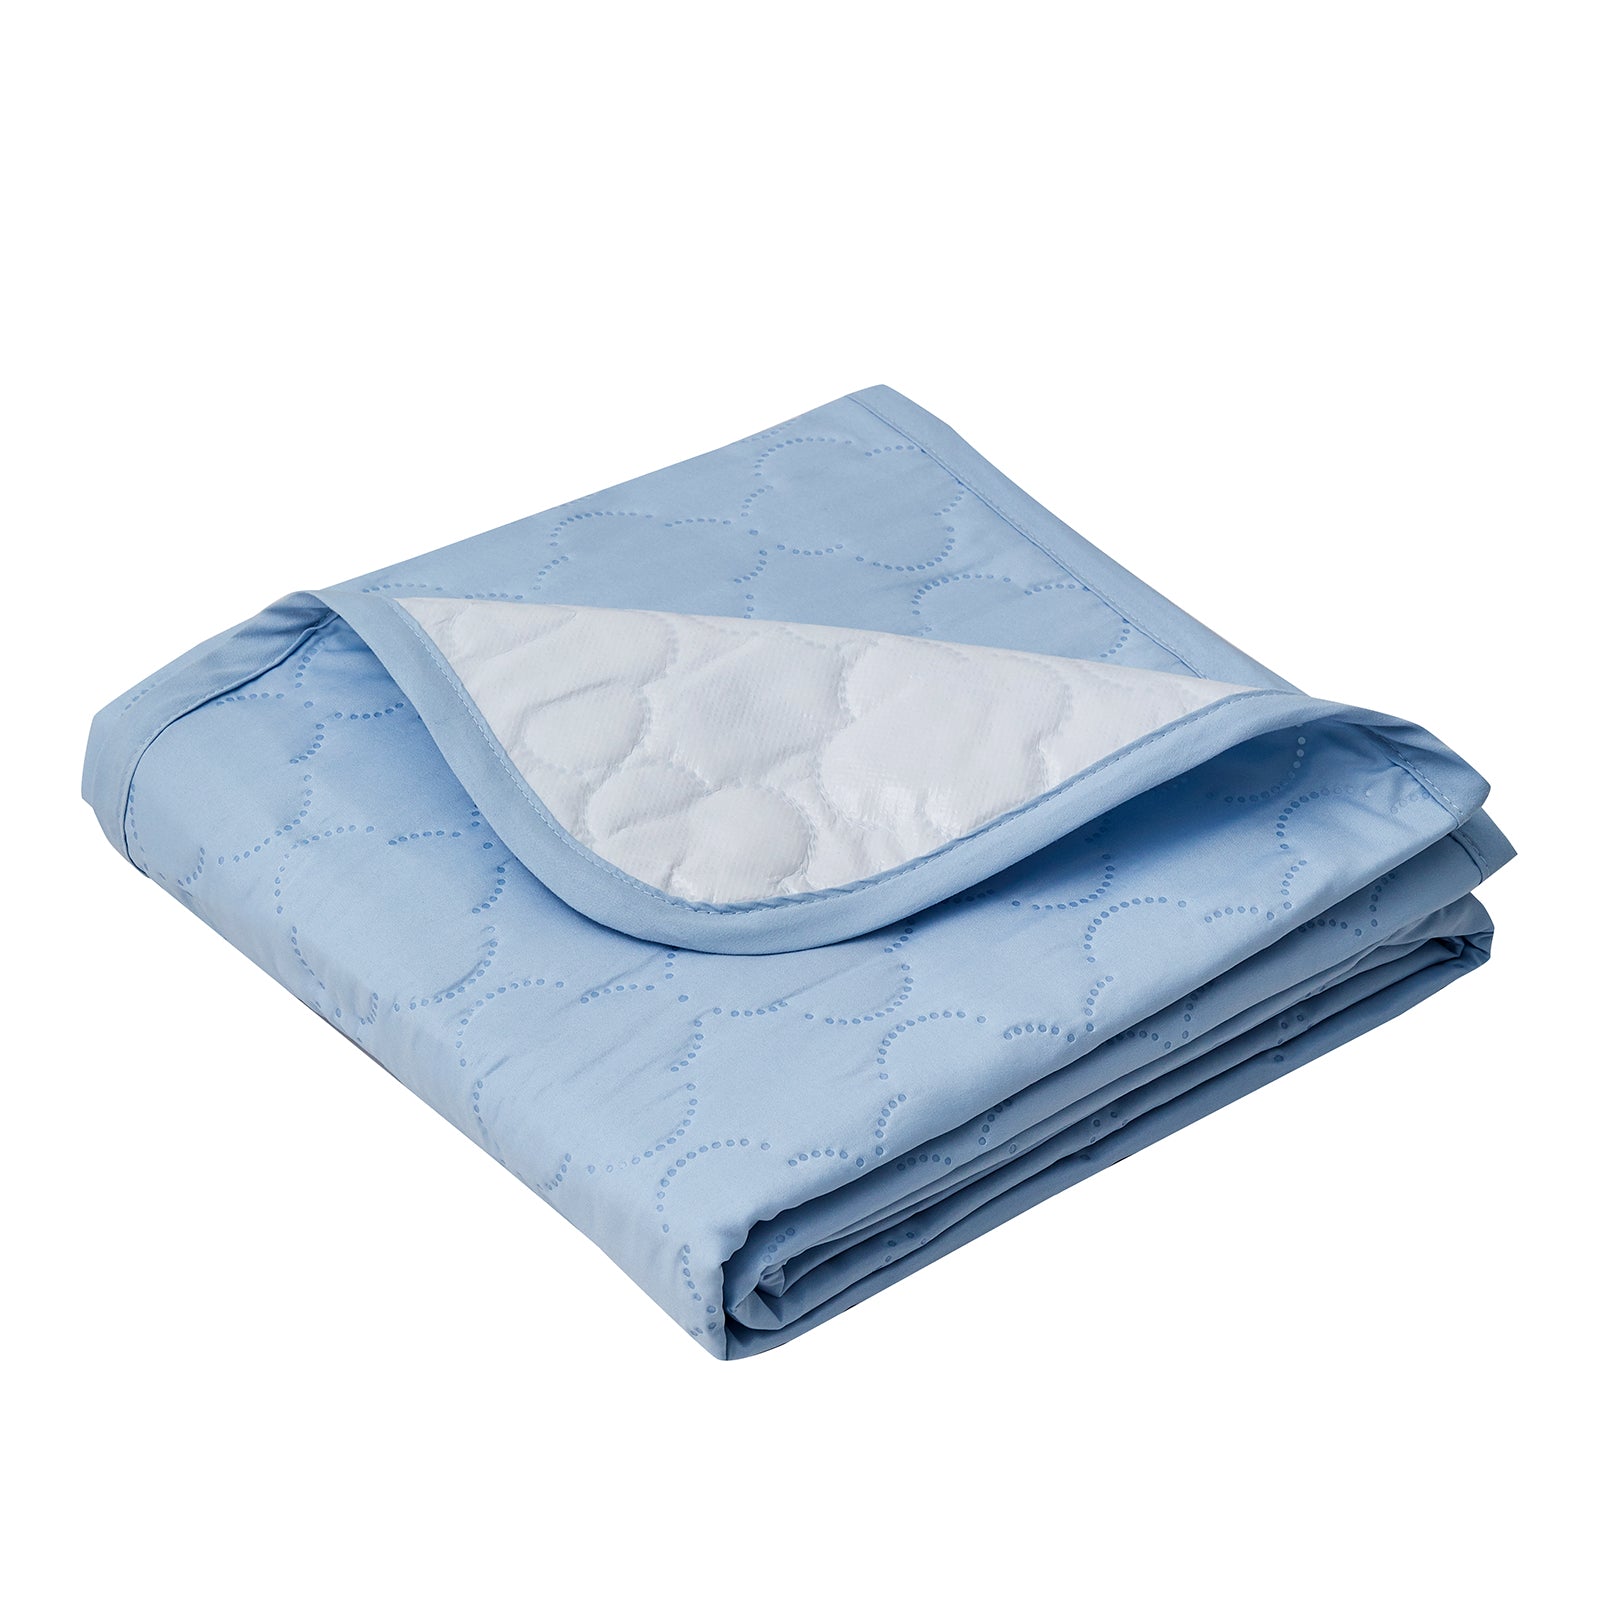 Pack of 1 Waterproof Bed Pad by Decroom